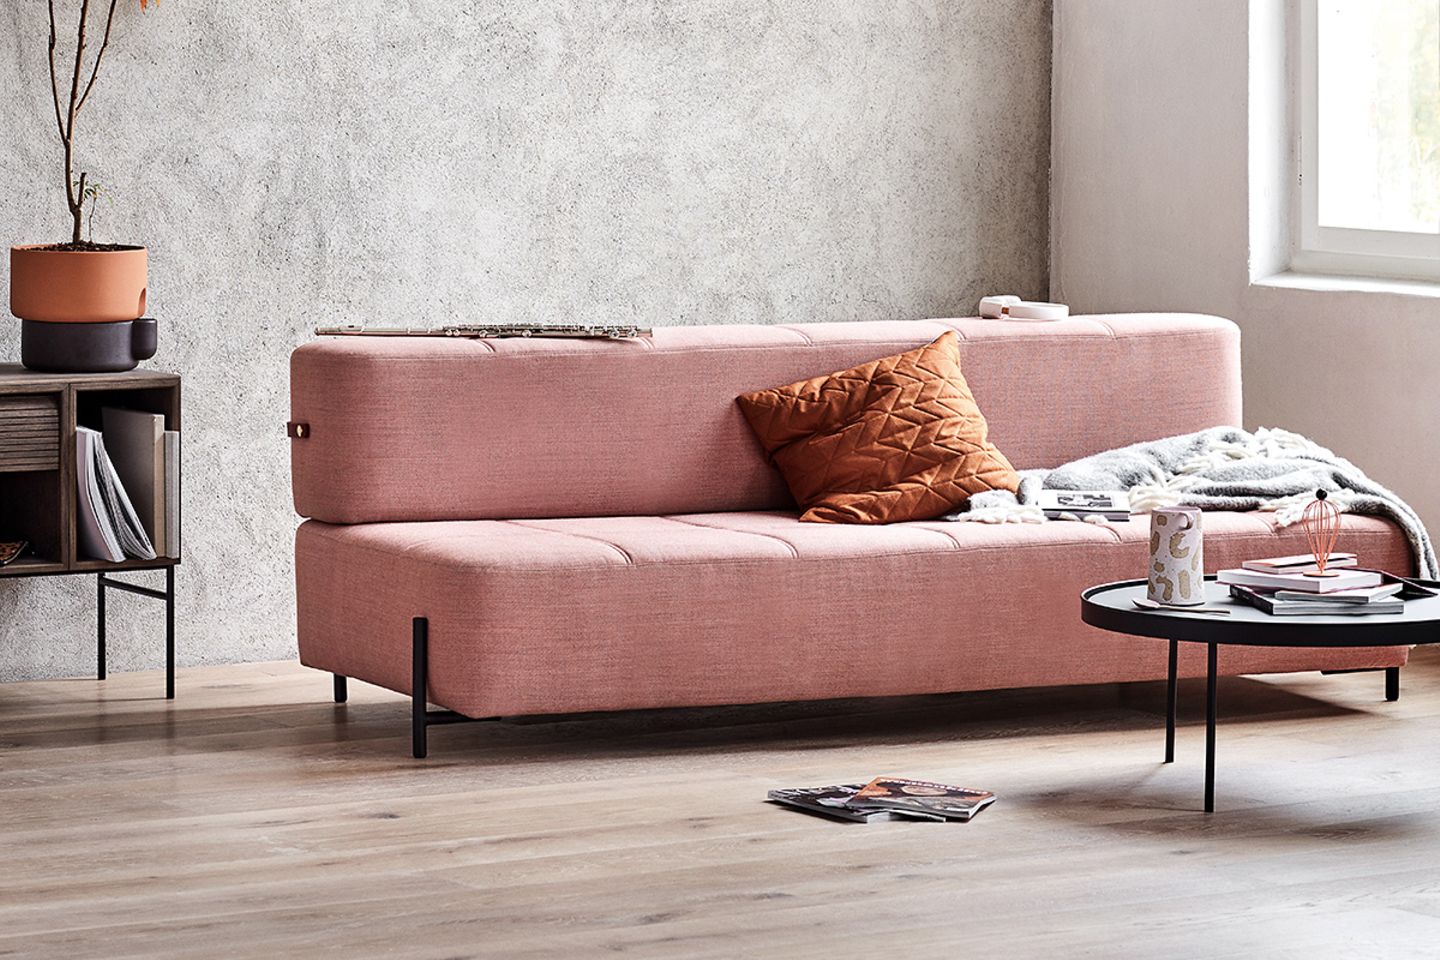 Rosafarbenes modernes Schlafsofa mit geradlinigem, minimalistischem Design von Northern mit braunem Kissen und Überwurf